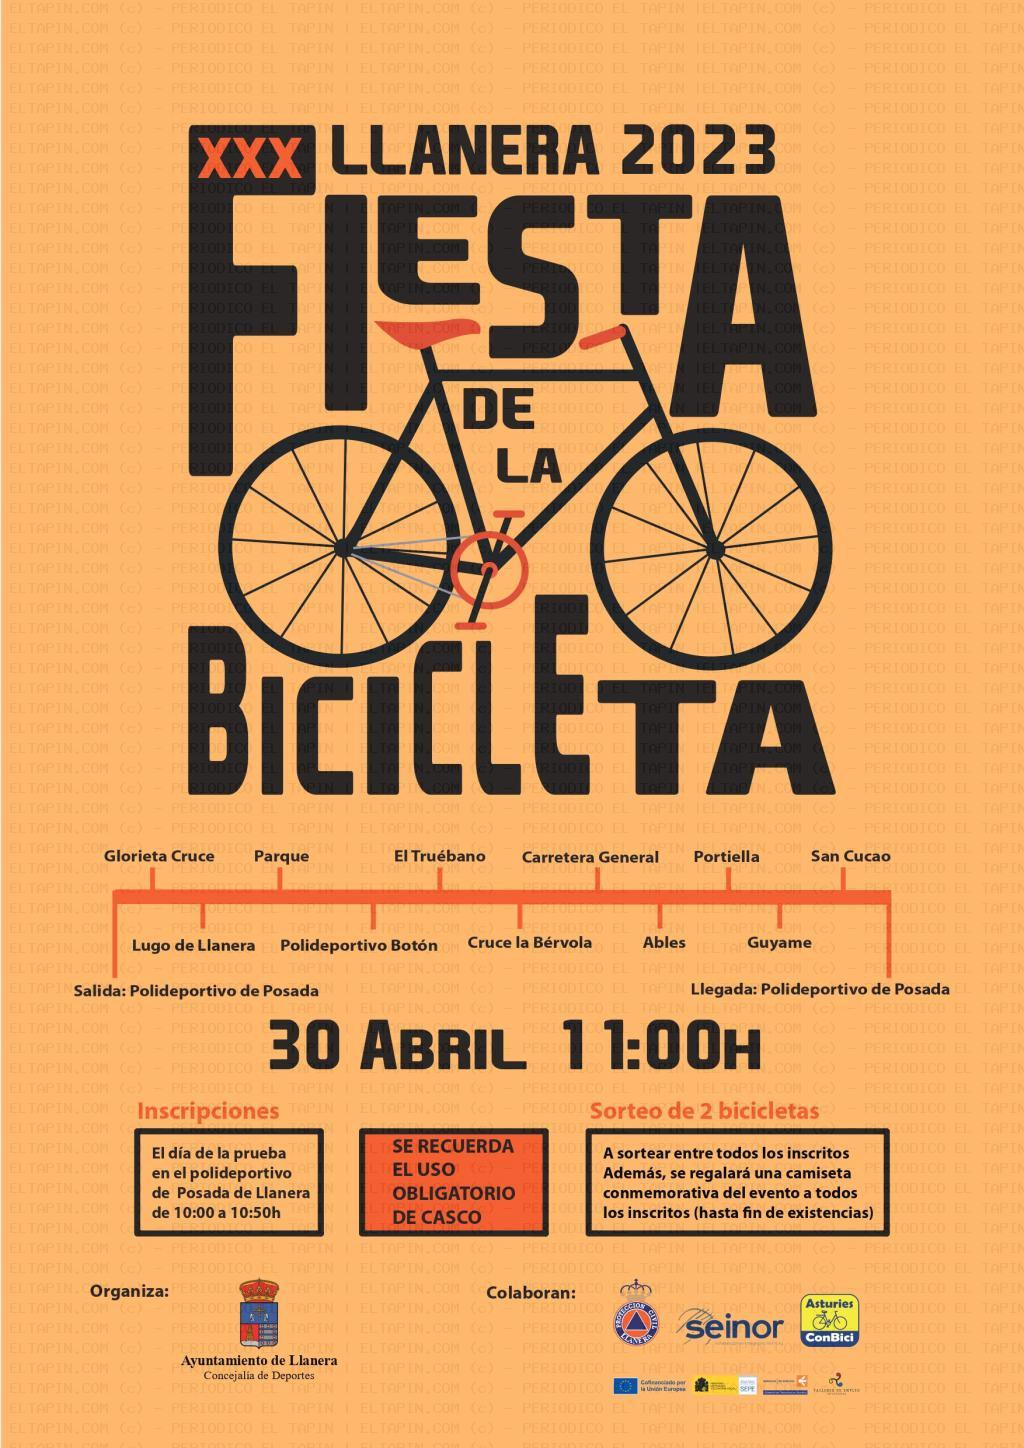 El Tapin - Llanera celebra este domingo la XXX Fiesta de la Bicicleta